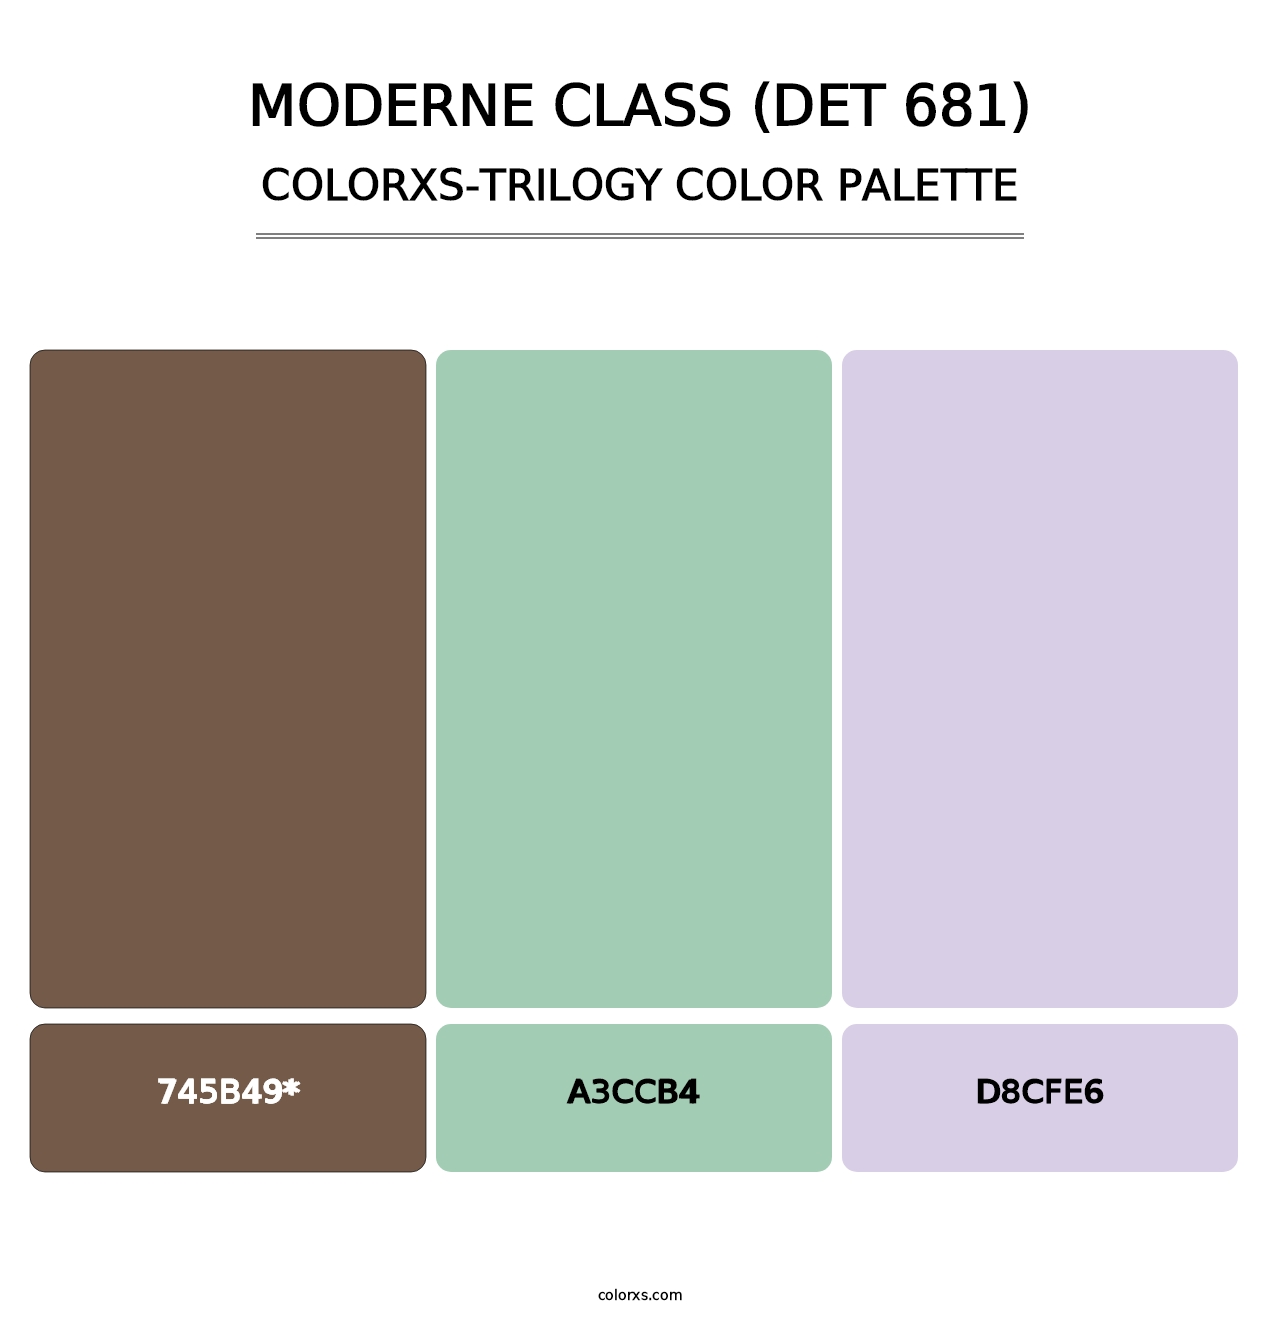 Moderne Class (DET 681) - Colorxs Trilogy Palette